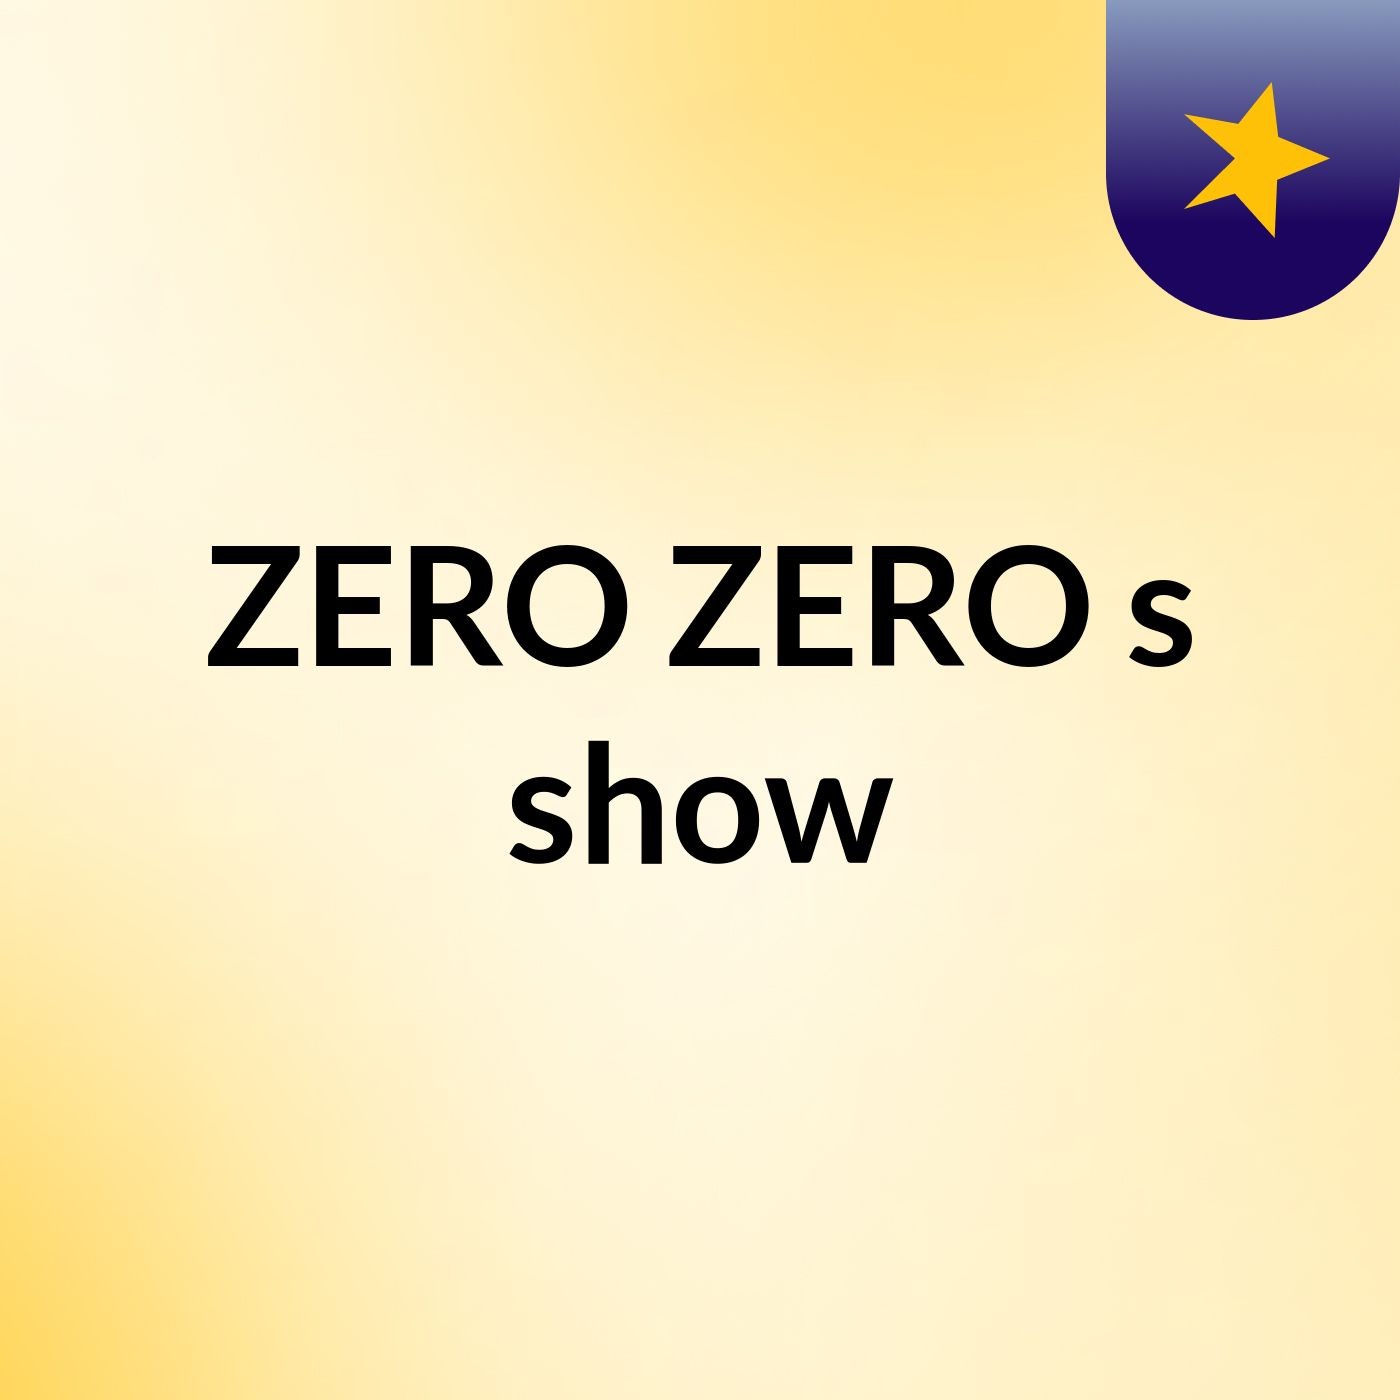 ZERO ZERO's show